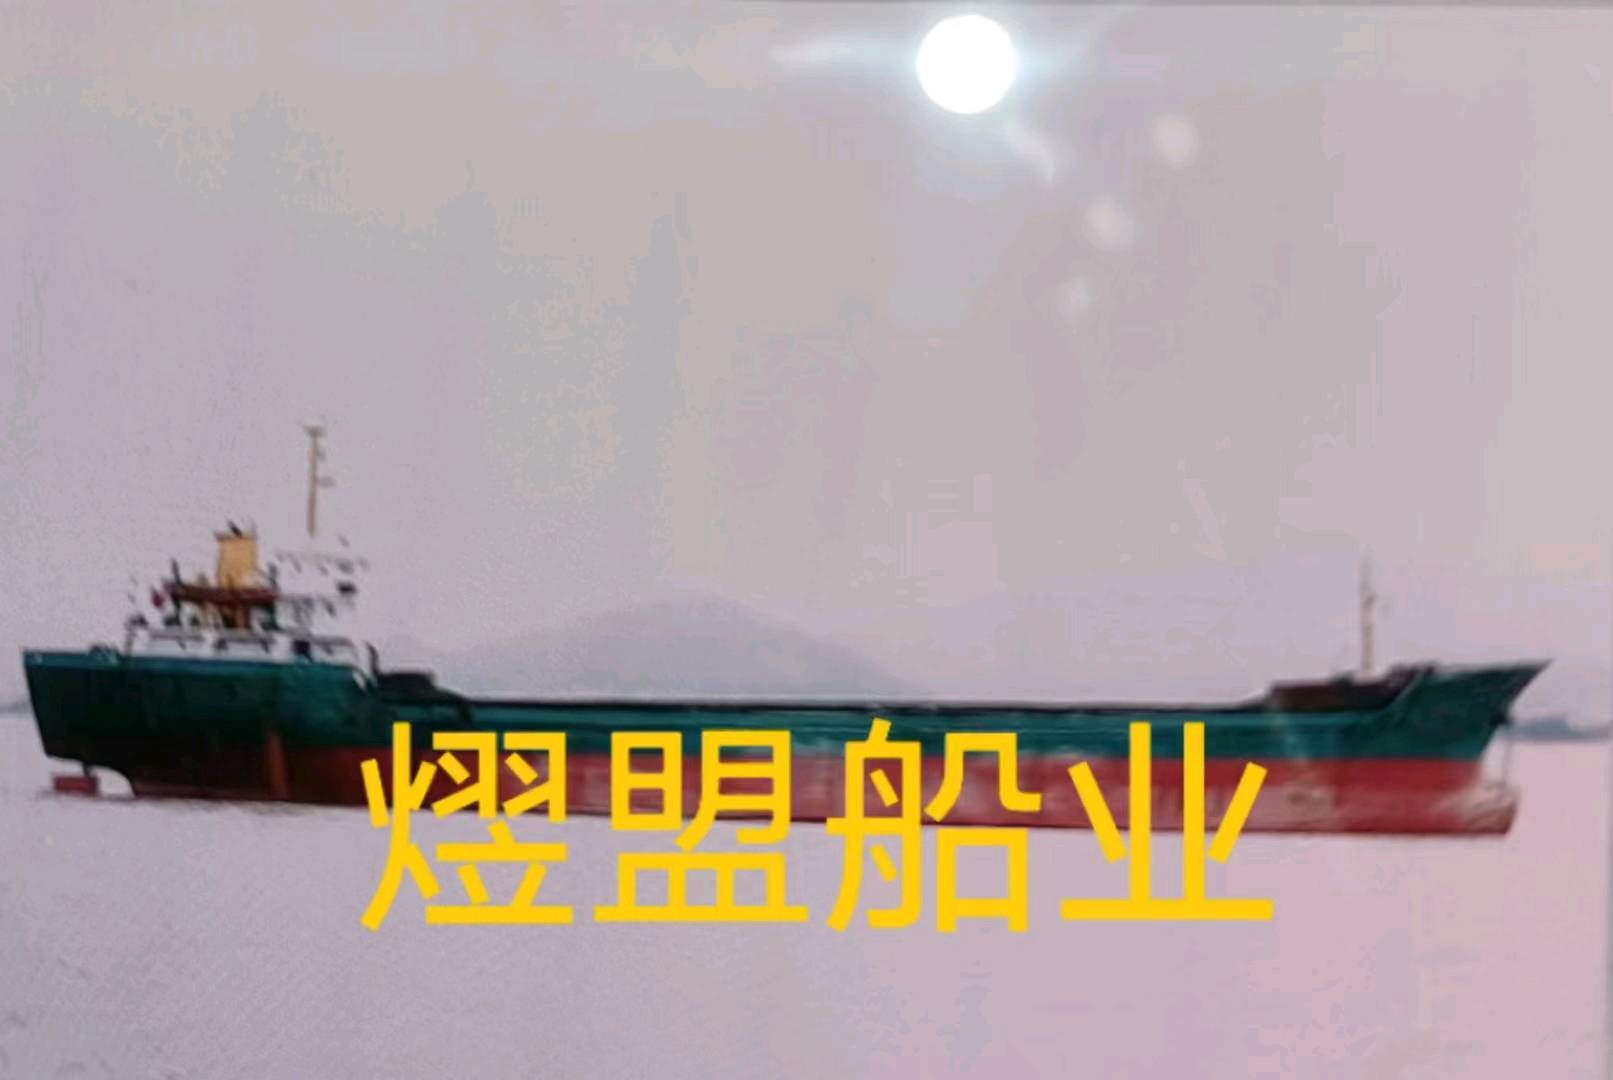 出售4730吨一般干货船 福建 福州市-2.jpg